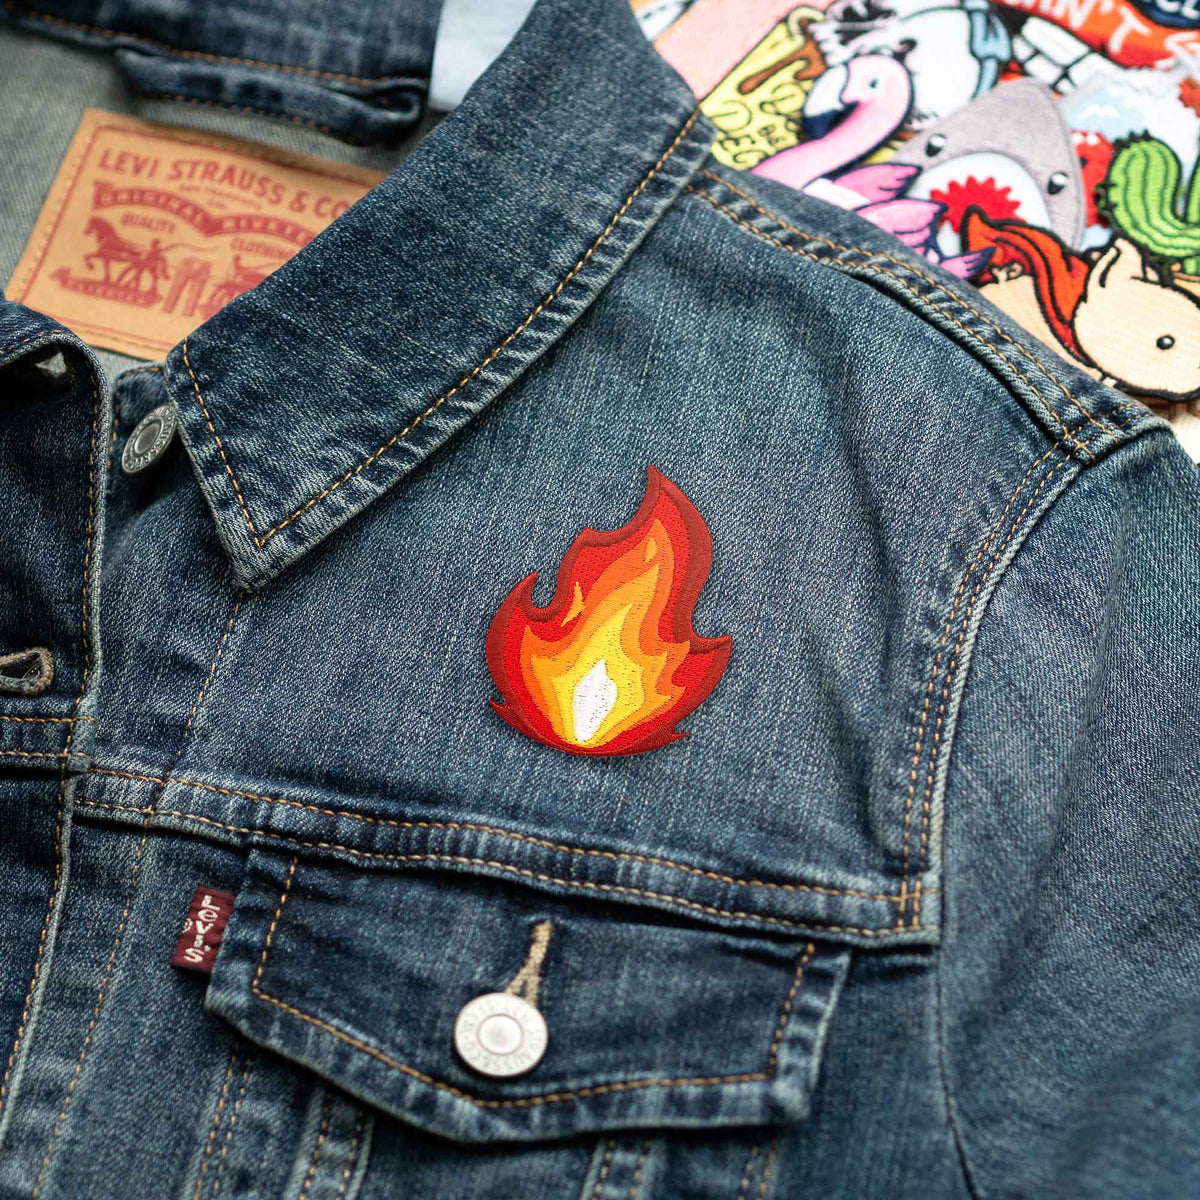 It's Fire patch on denim jacket